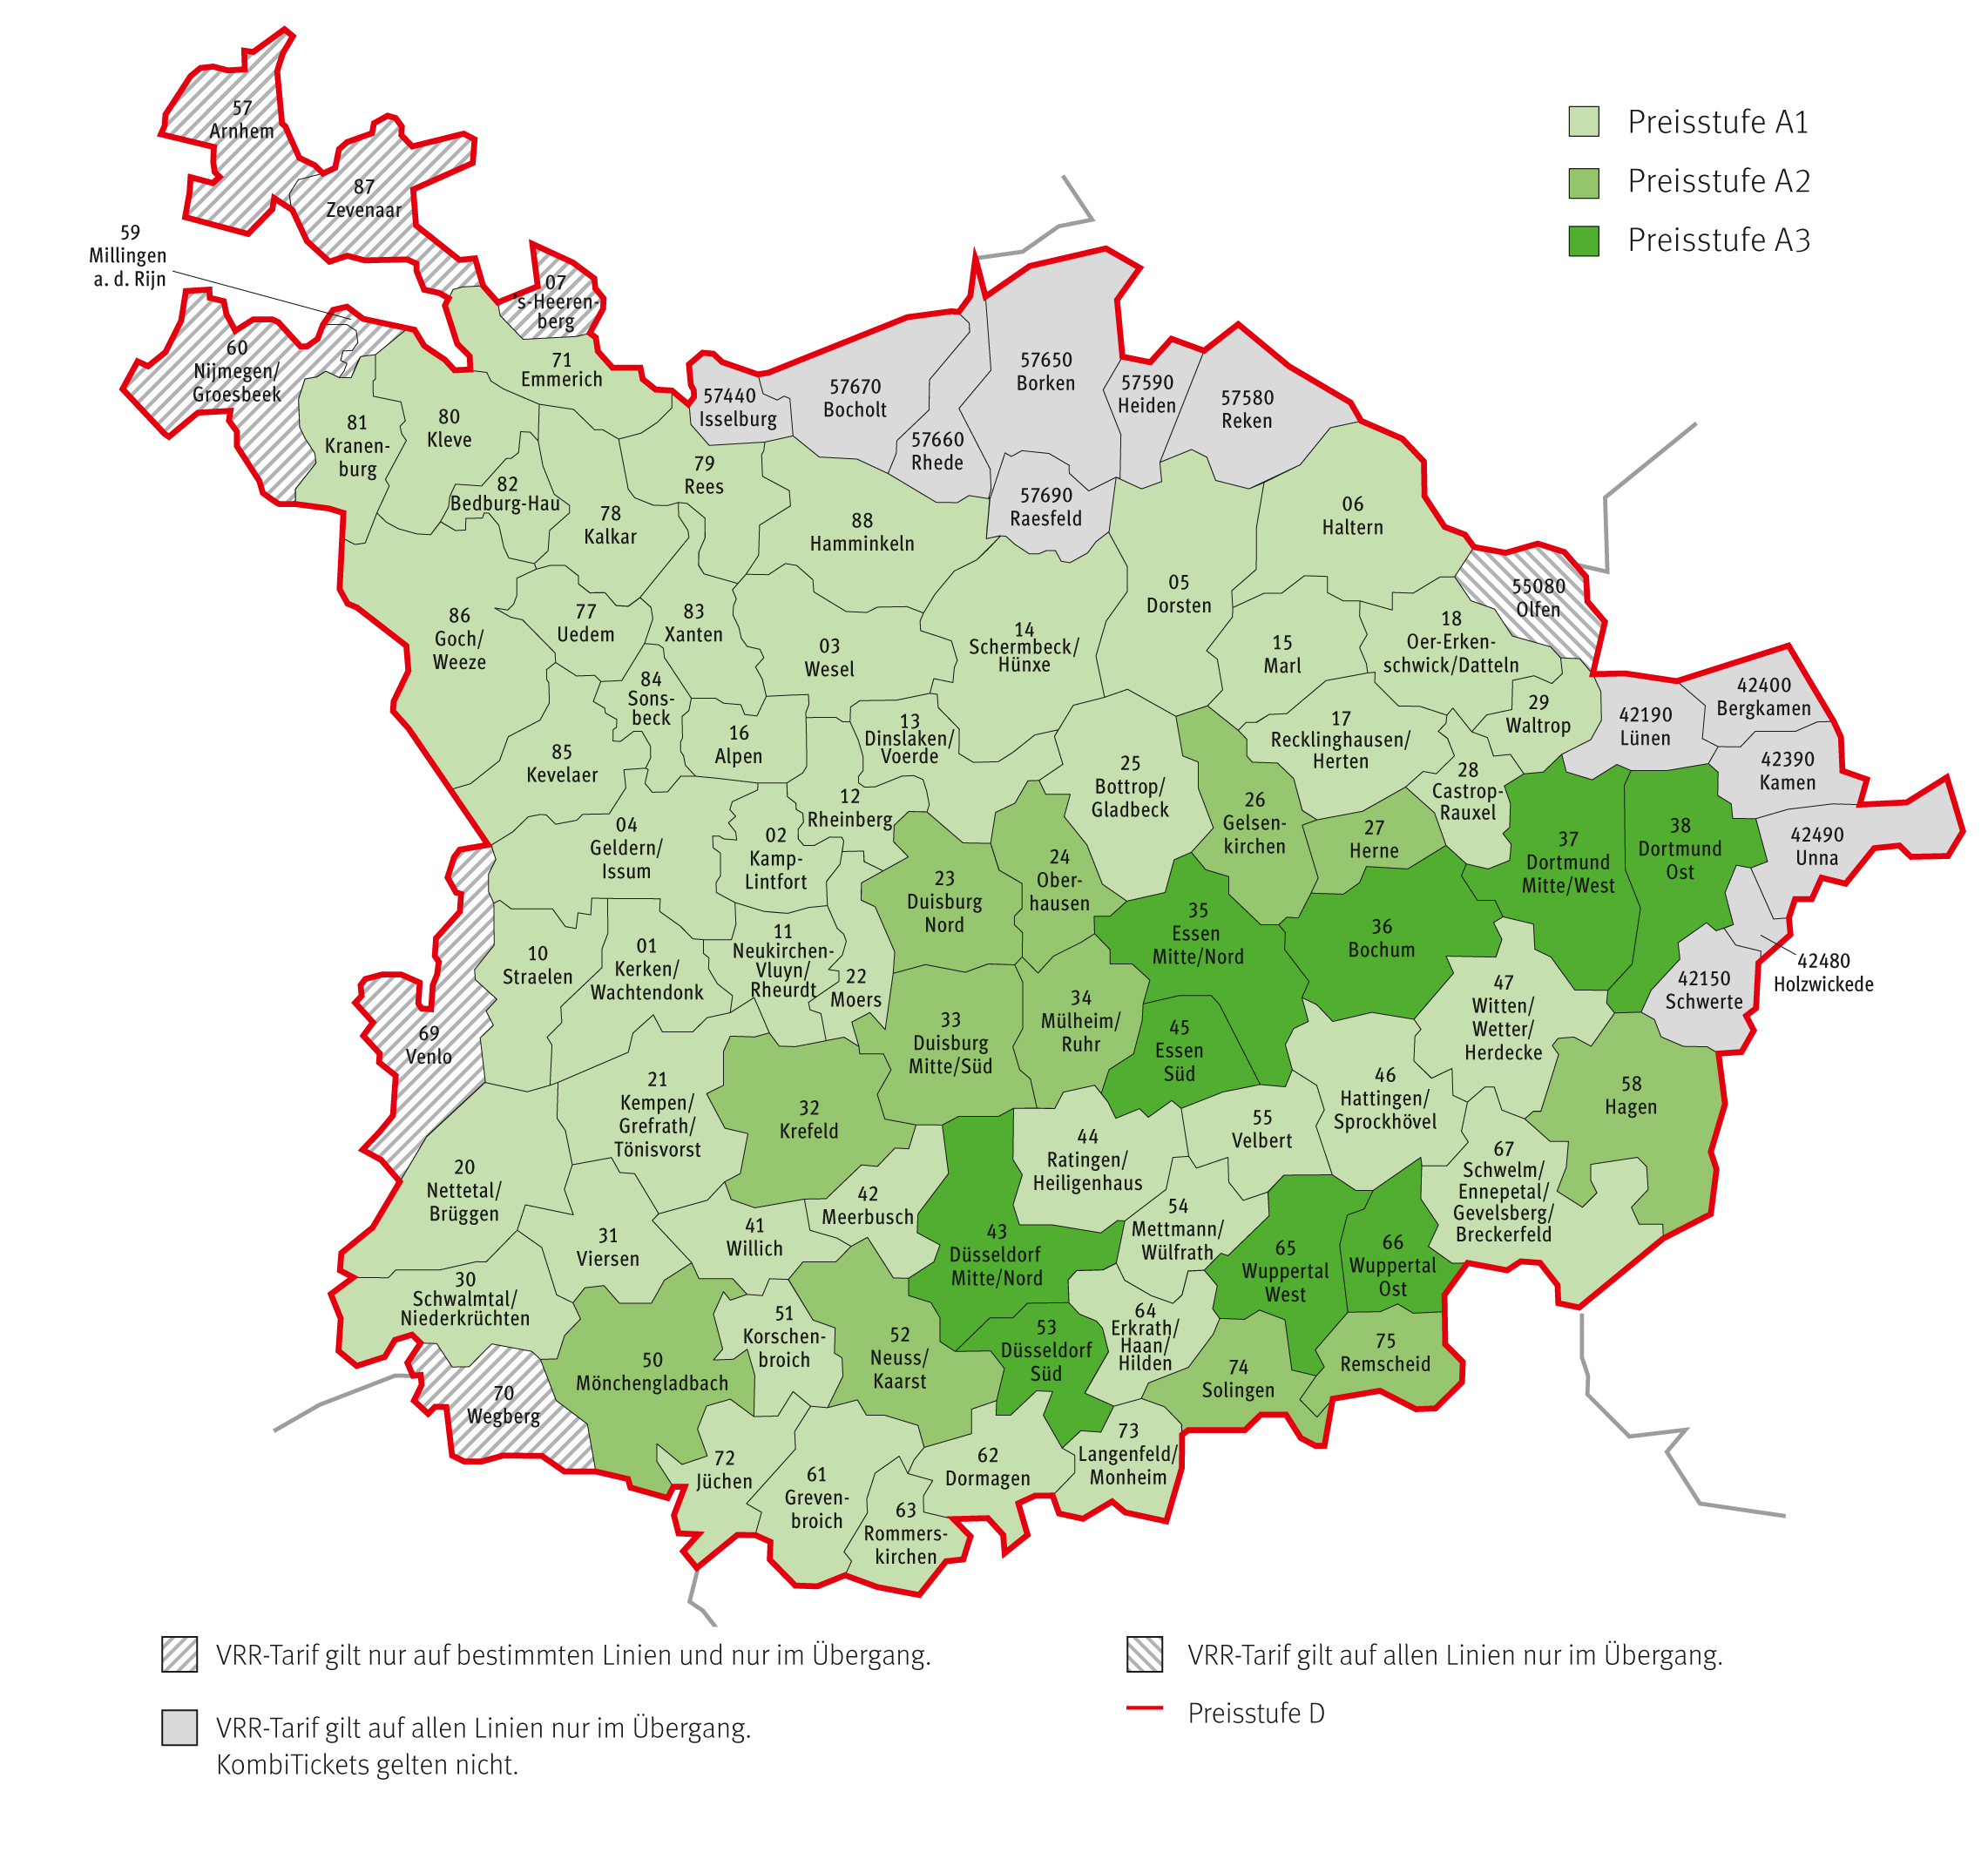 Die Verbundkarte mit einer Übersicht der Städte im VRR-Gebiet.